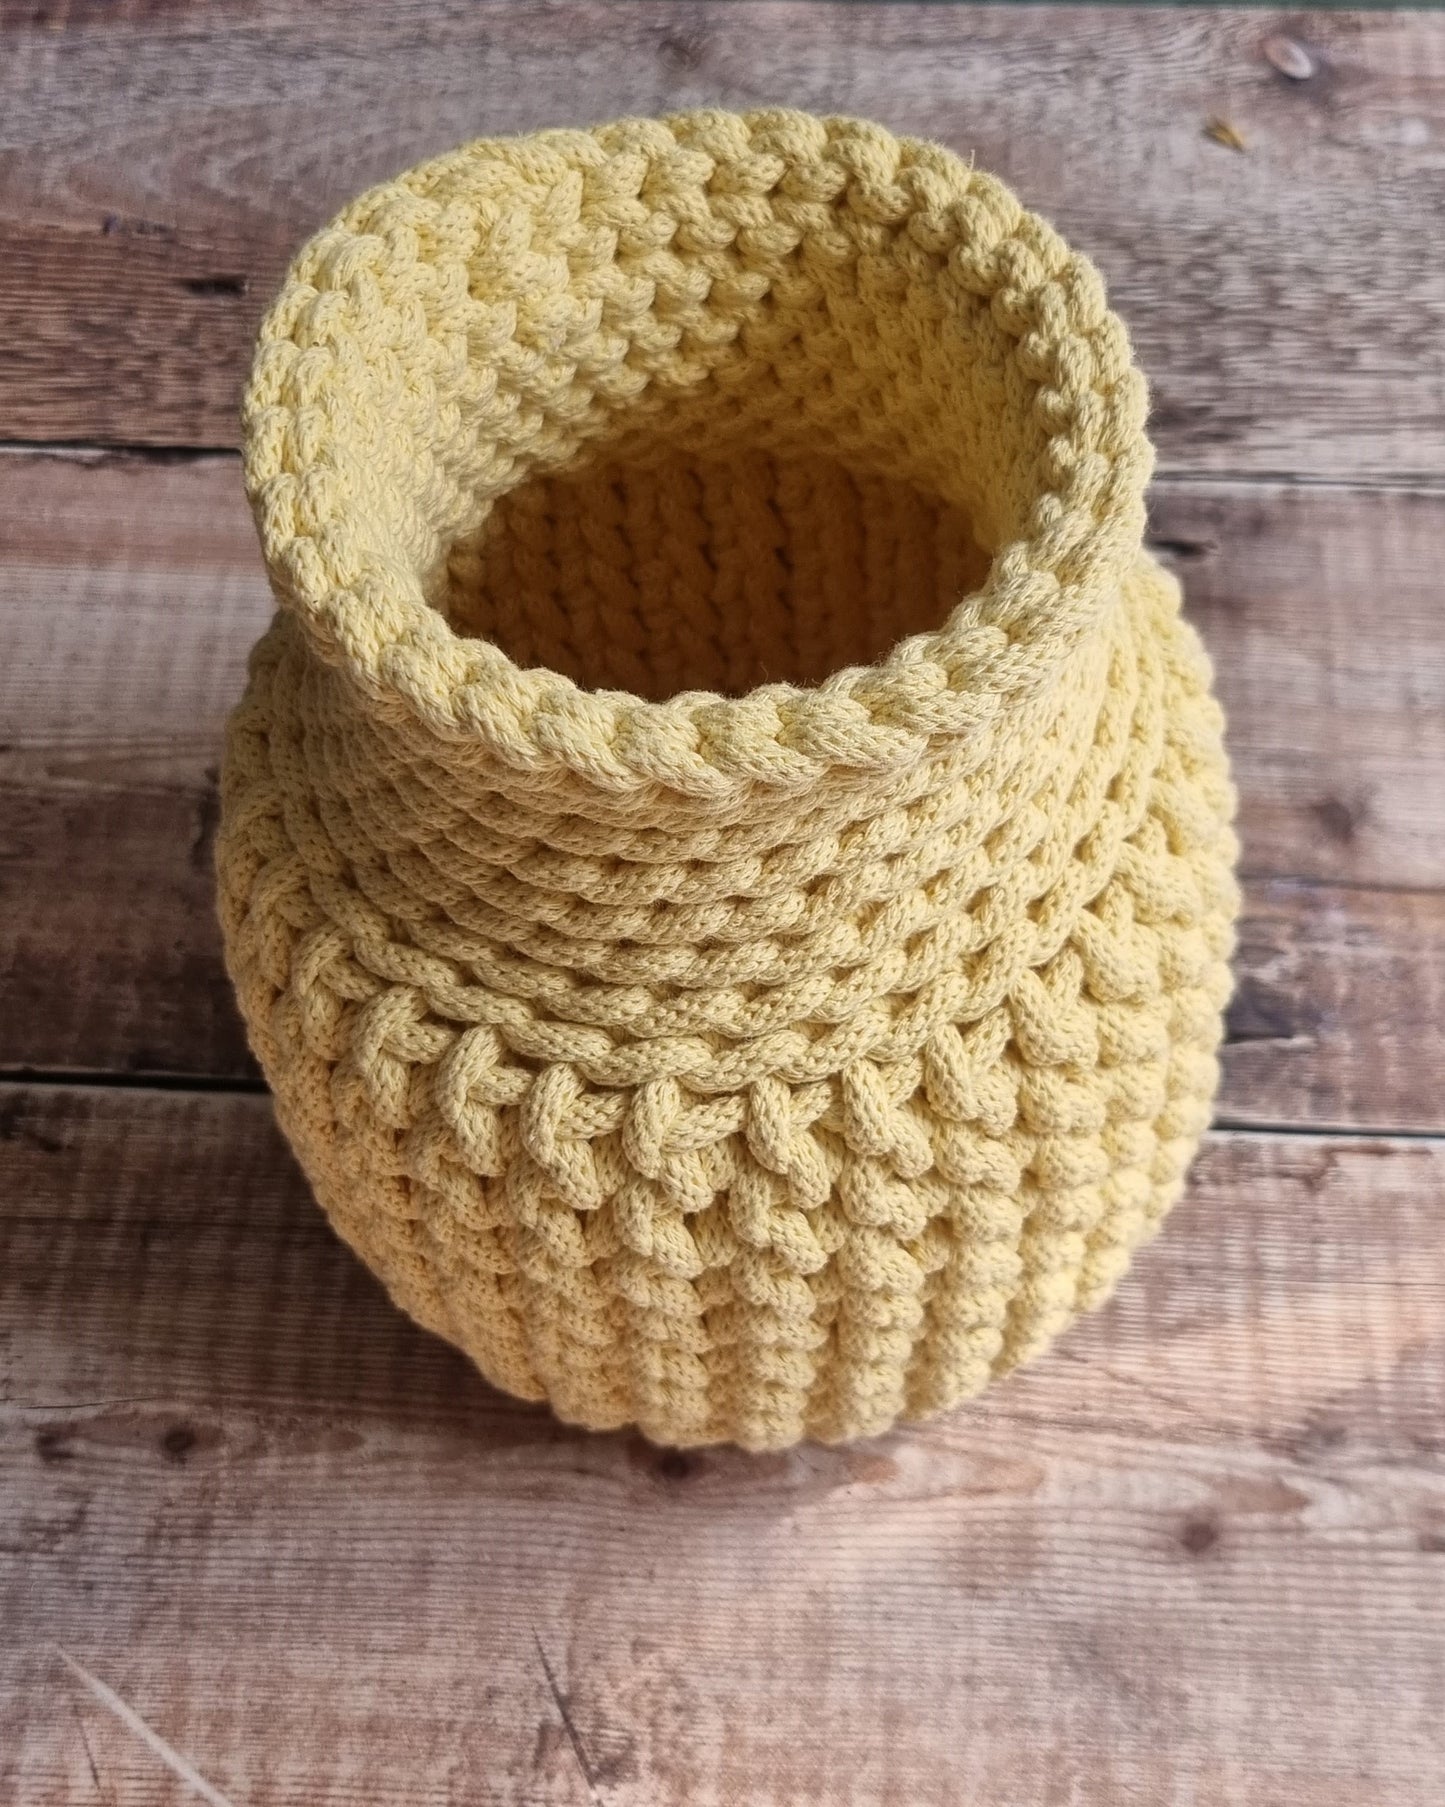 Crochet Vase